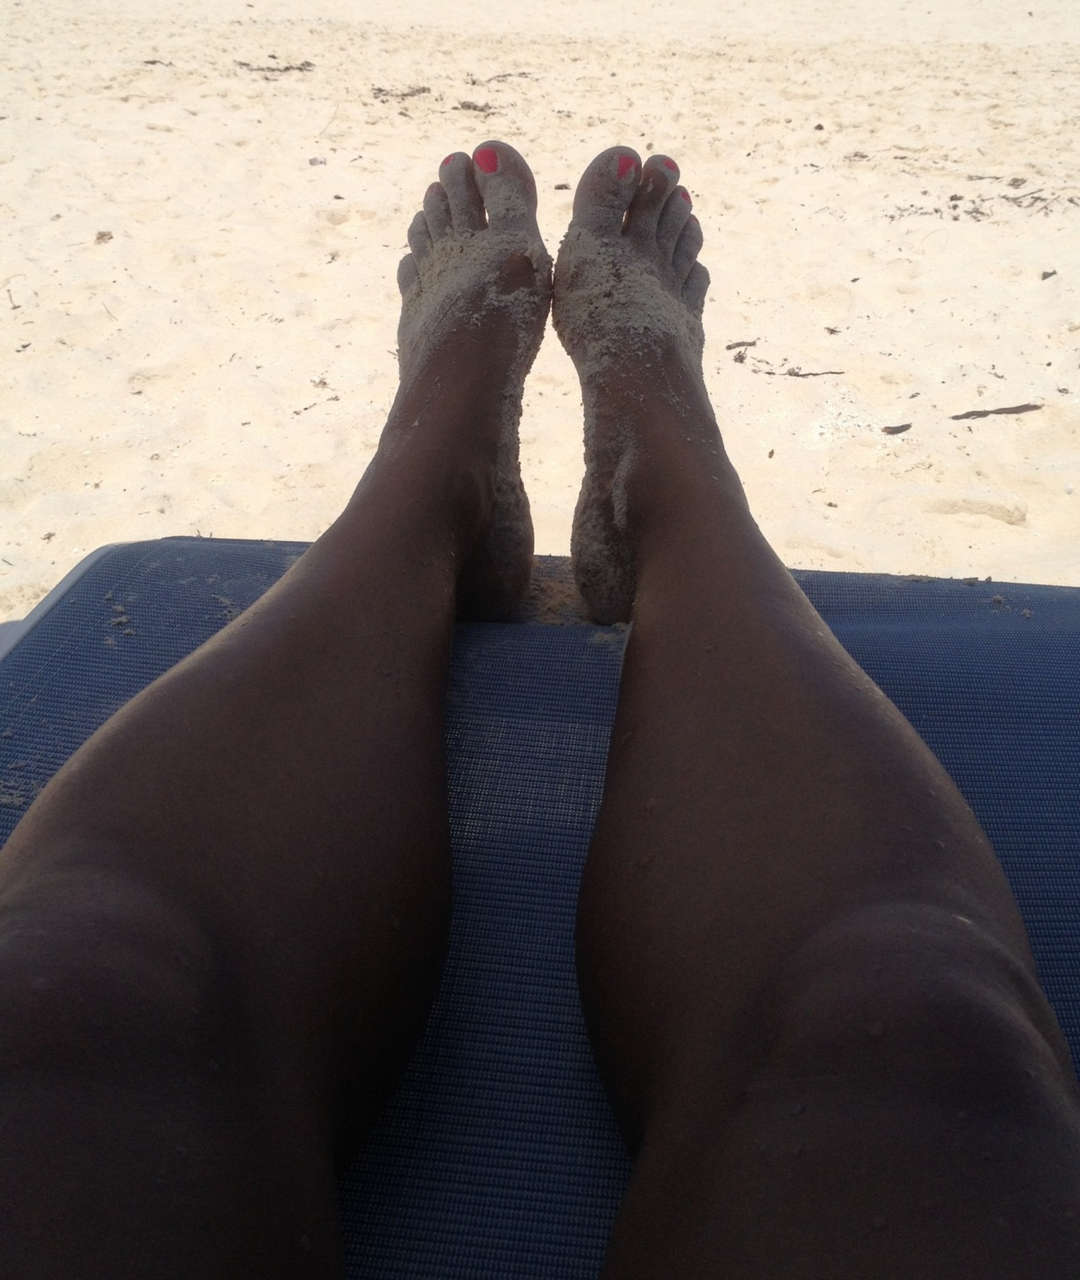 A Day At The Beach Feet